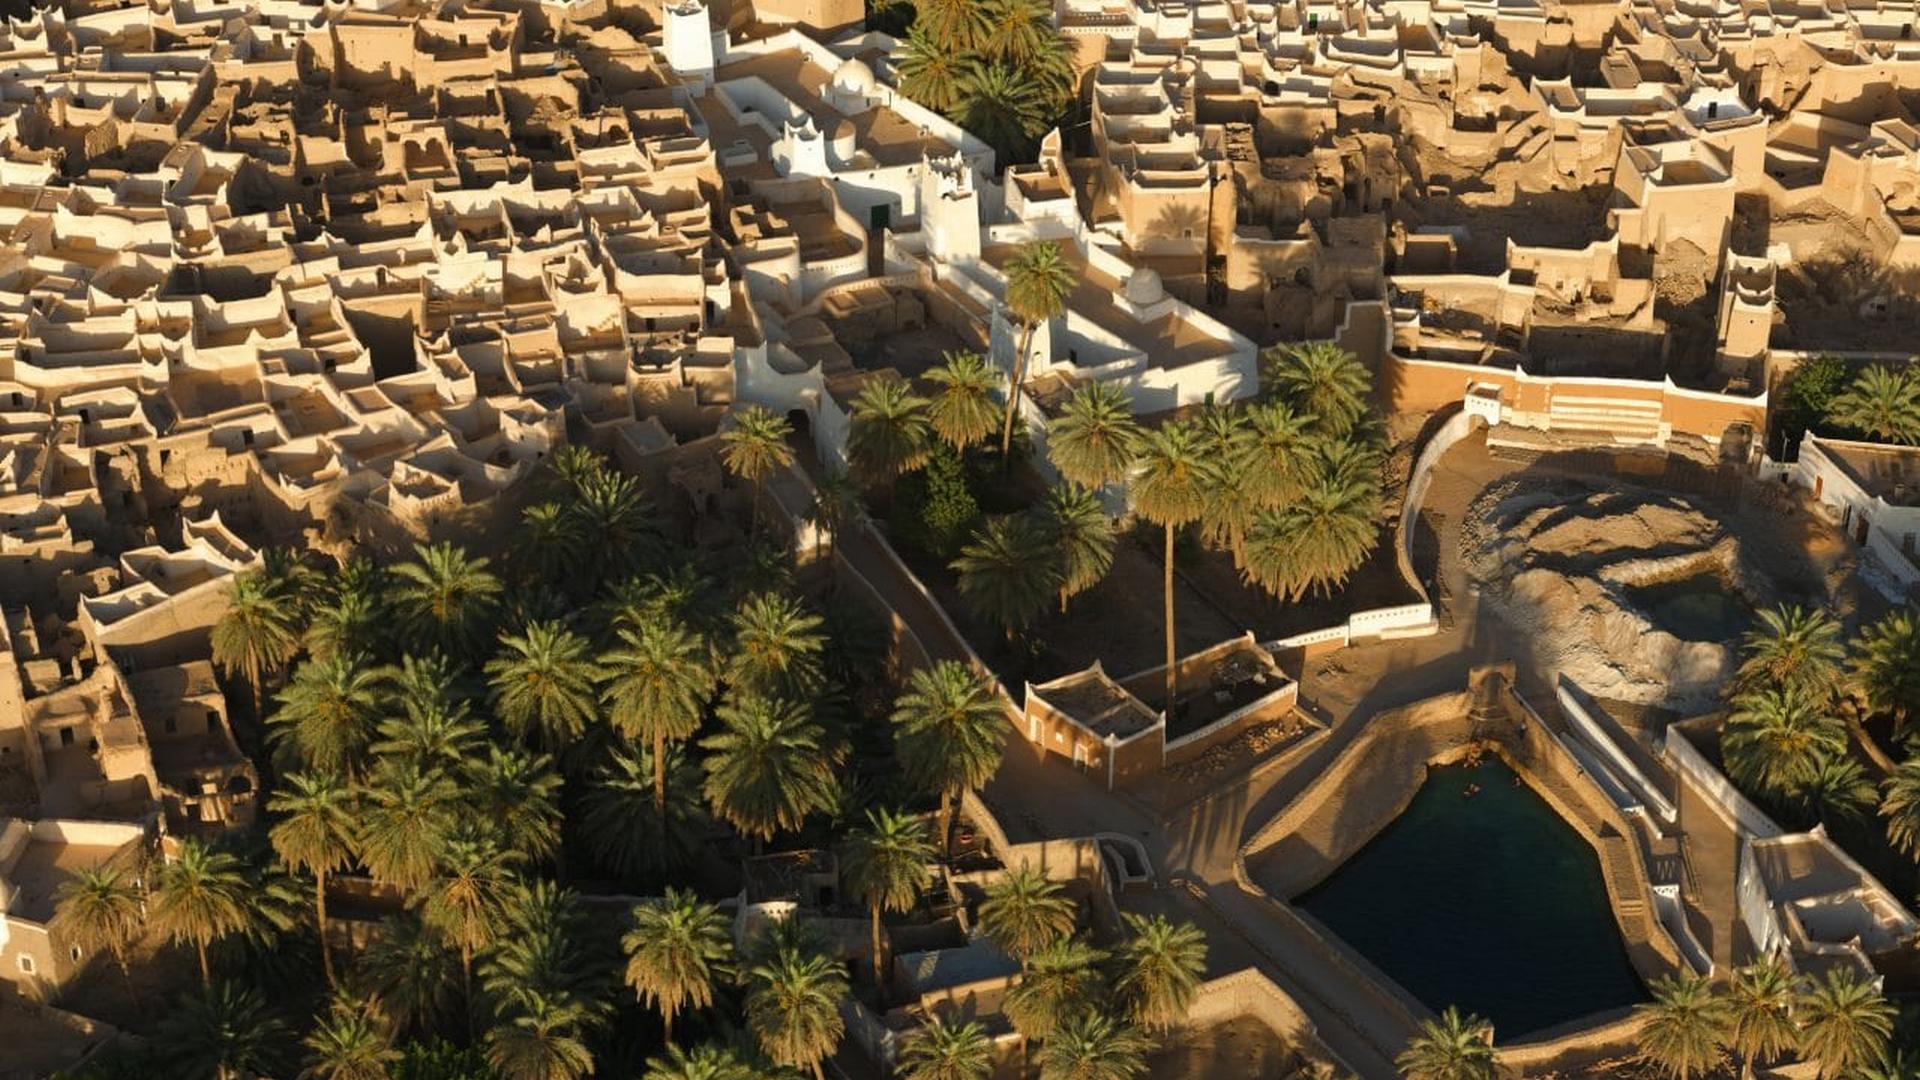 Vista aérea da Cidade Velha de Ghadames, mostrando o aglomerado de construções sem a separação entre quarteirões.